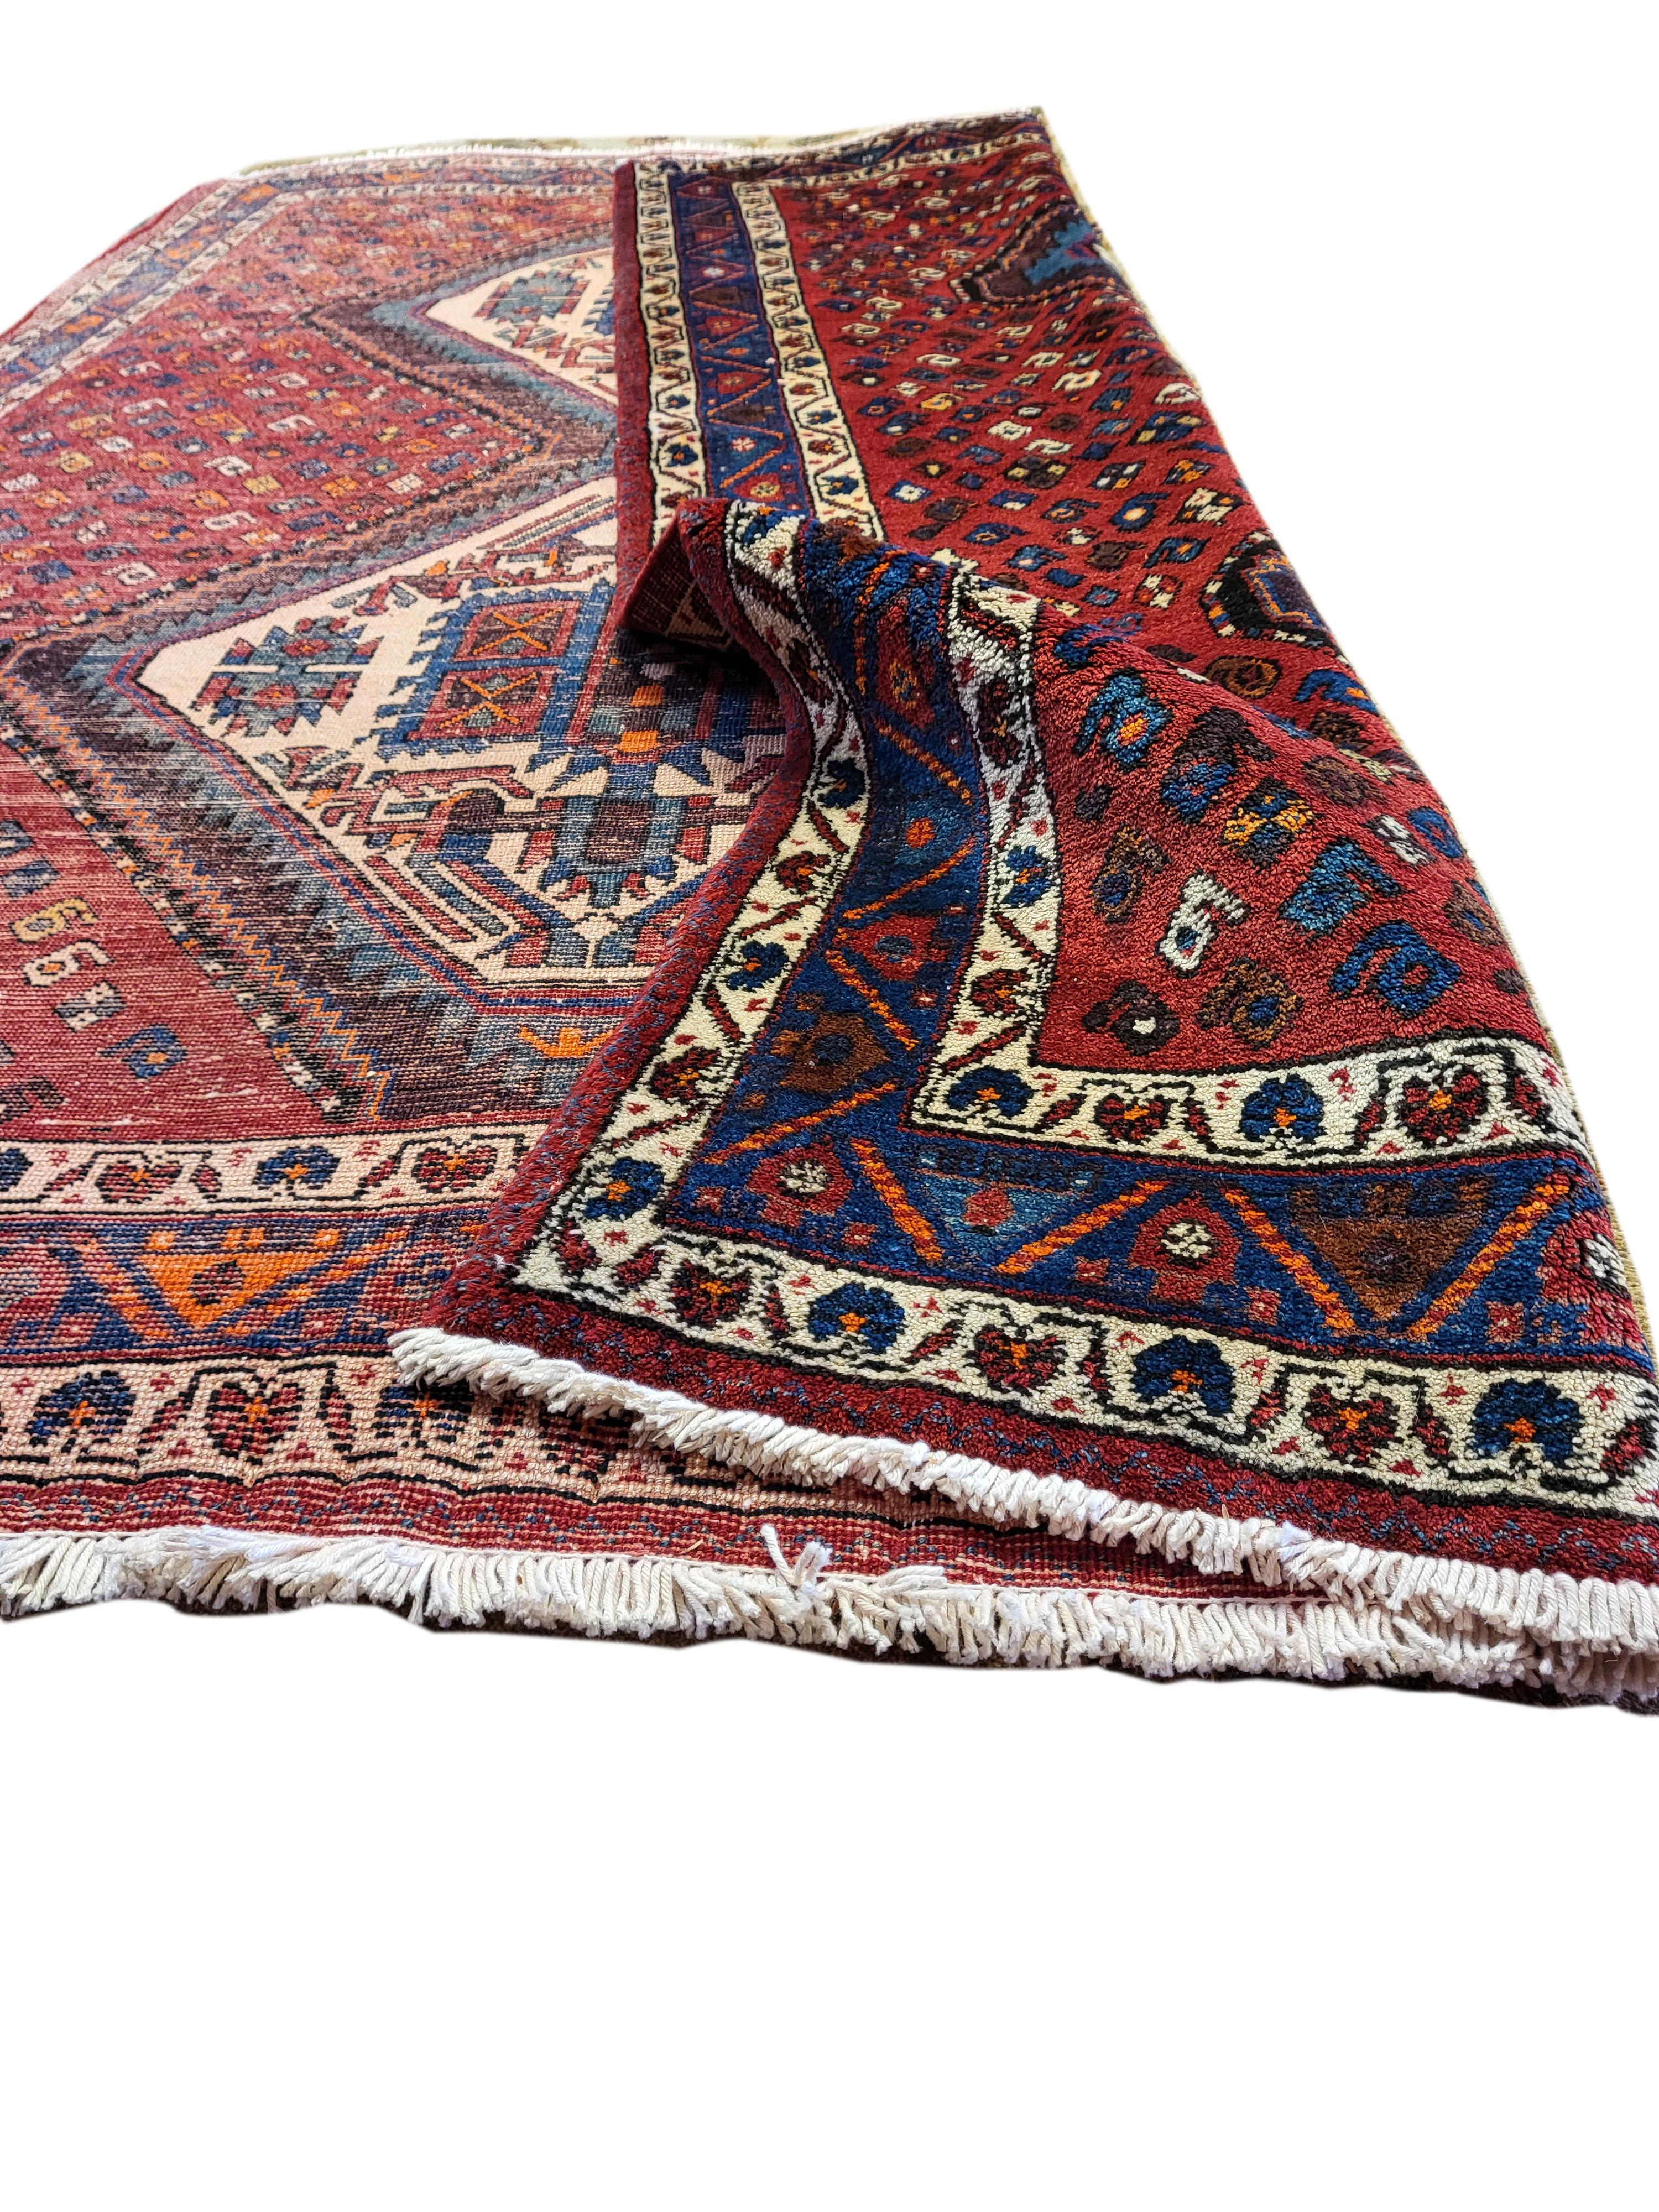 Wunderschöner Sirjan-Afshar-Perserteppich aus den 50er Jahren. Mit 2 verschlungenen Medaillons auf einem an Motiven reichen Vorderseite. Das Farbschema und die Motive sind typisch für das Sirjan-Afshar-Design. Die bemerkenswerte Handwerkskunst